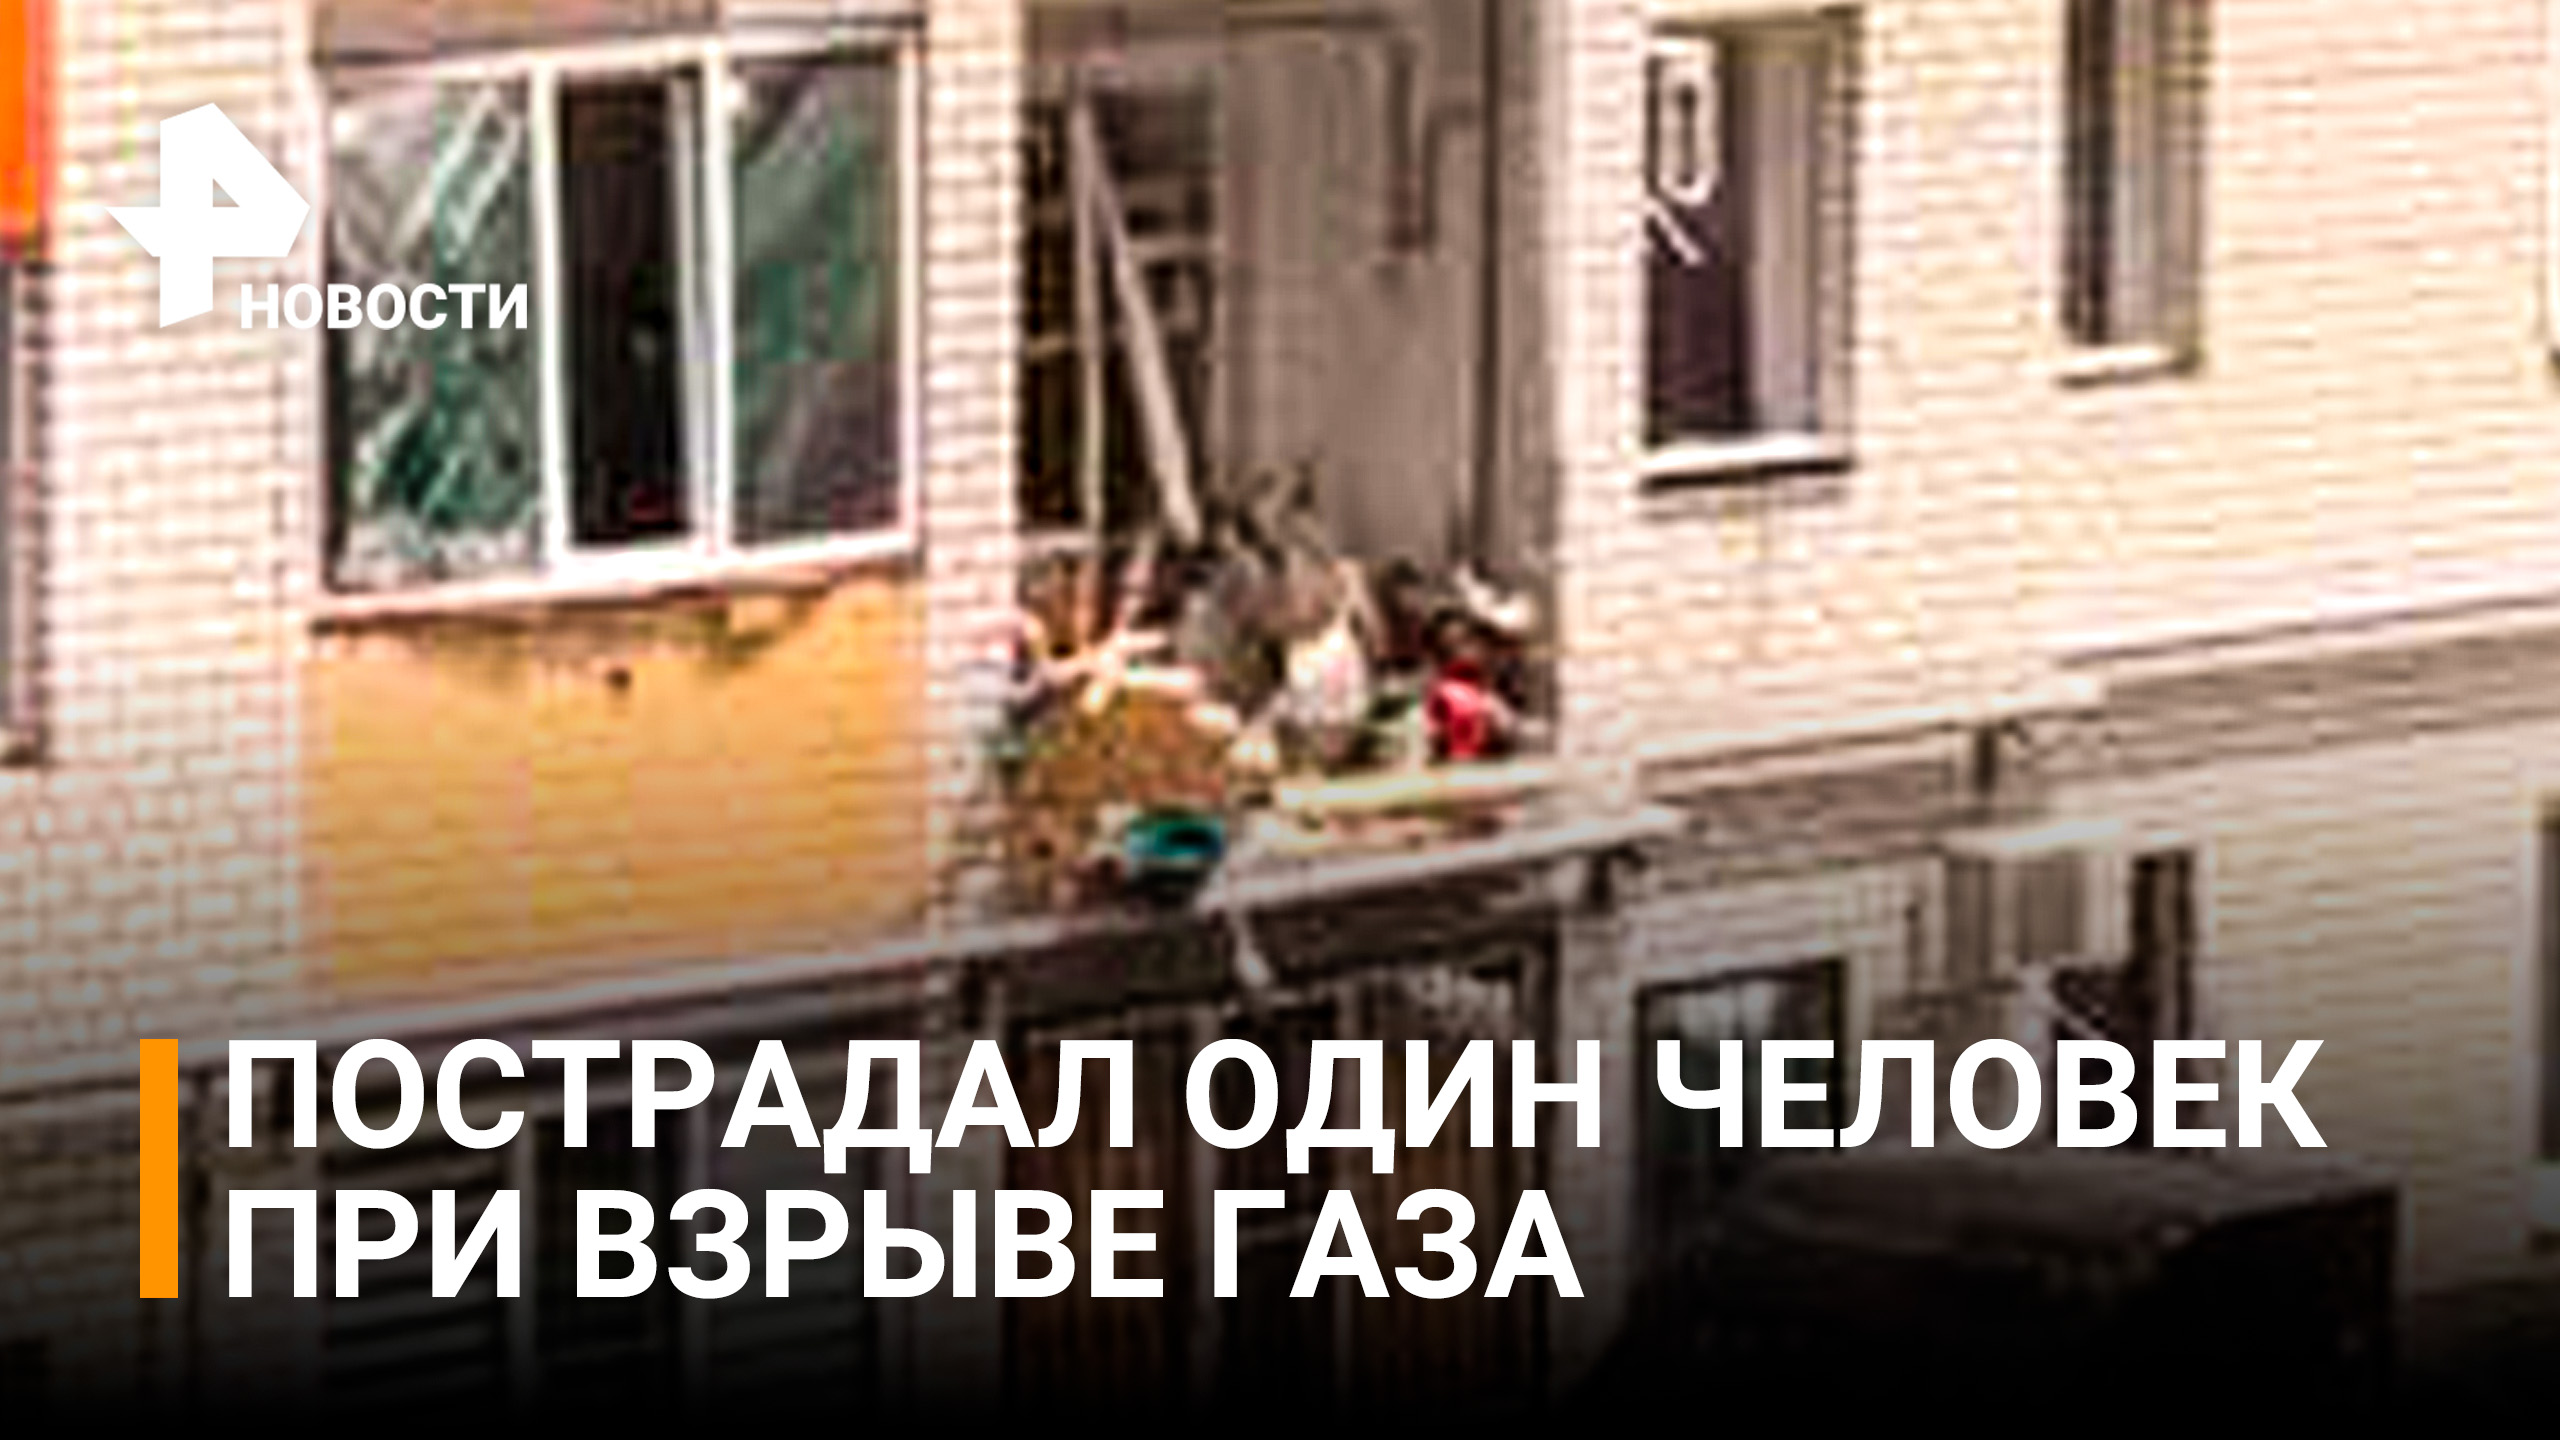 Взрыв газа в жилом доме в Ставрополе / РЕН Новости